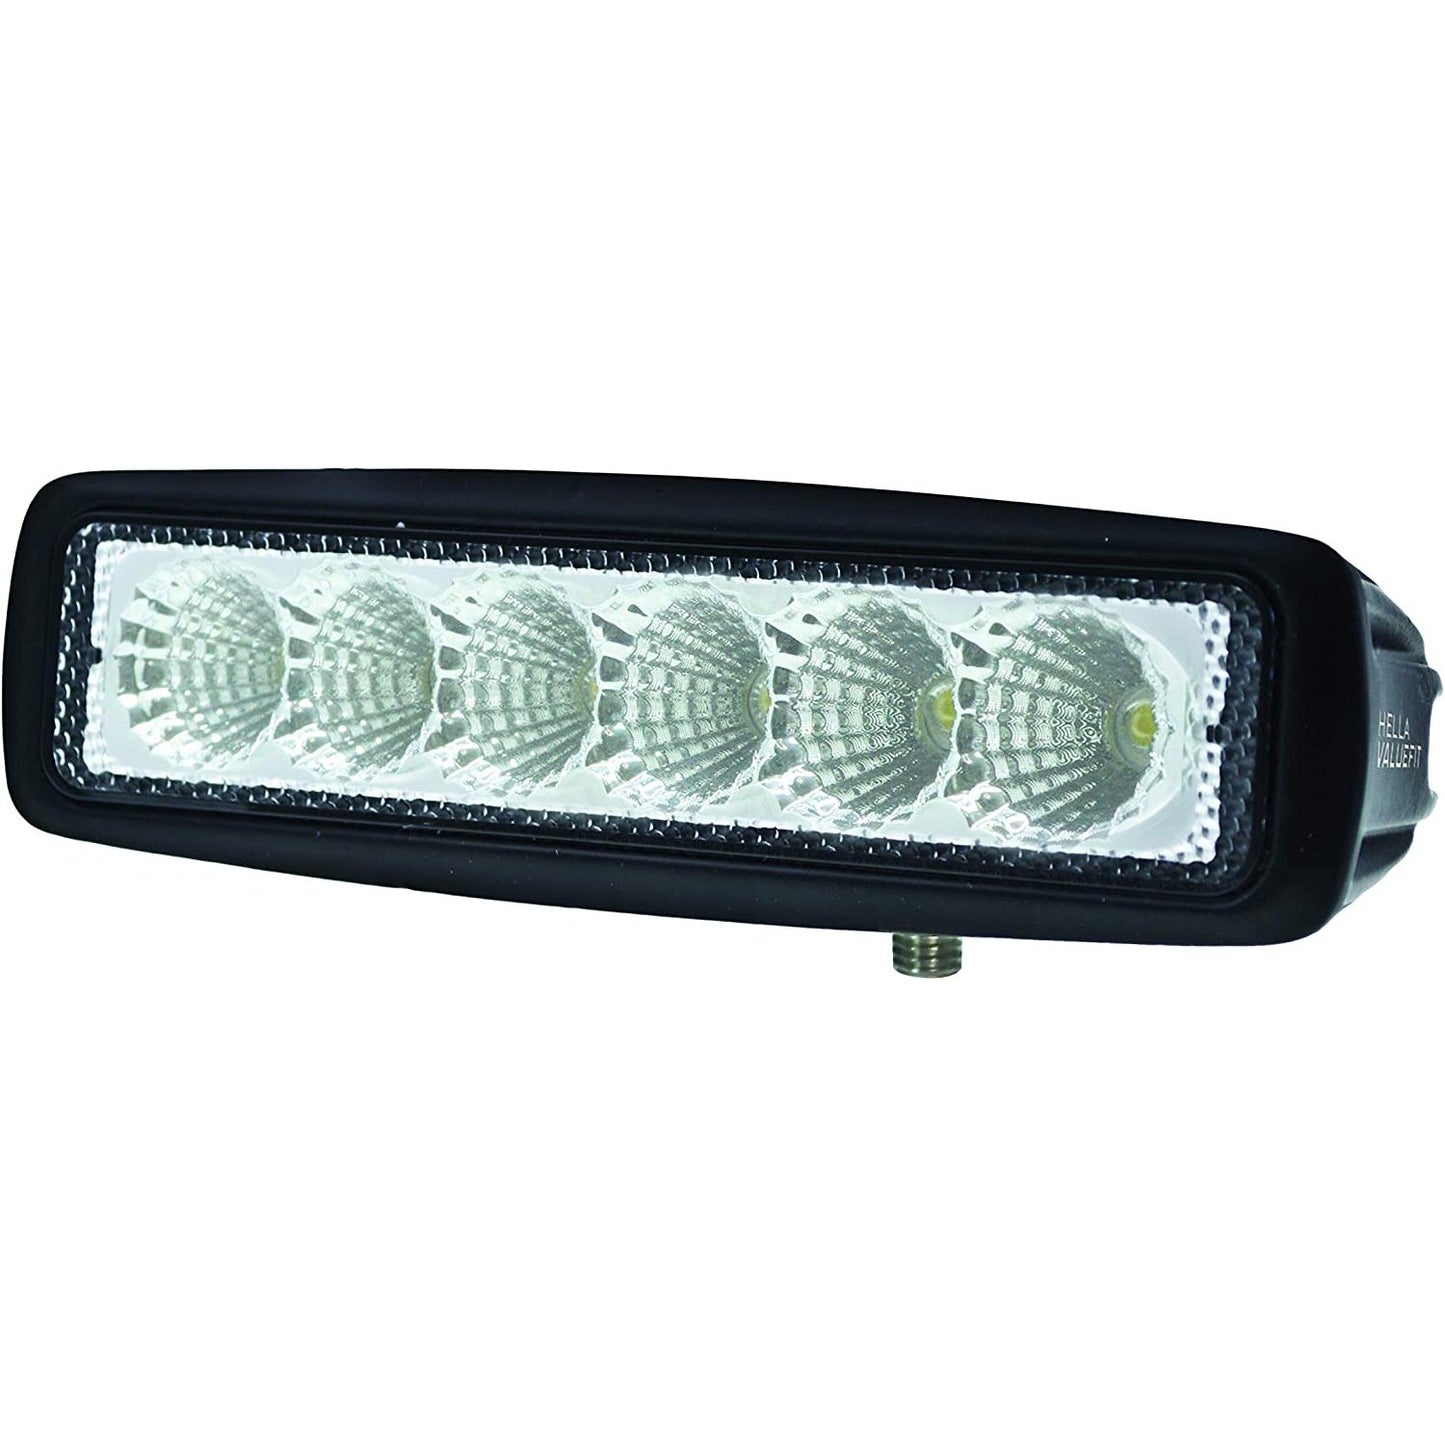 Value Fit Mini 6 LED Flood Light Bar - Black